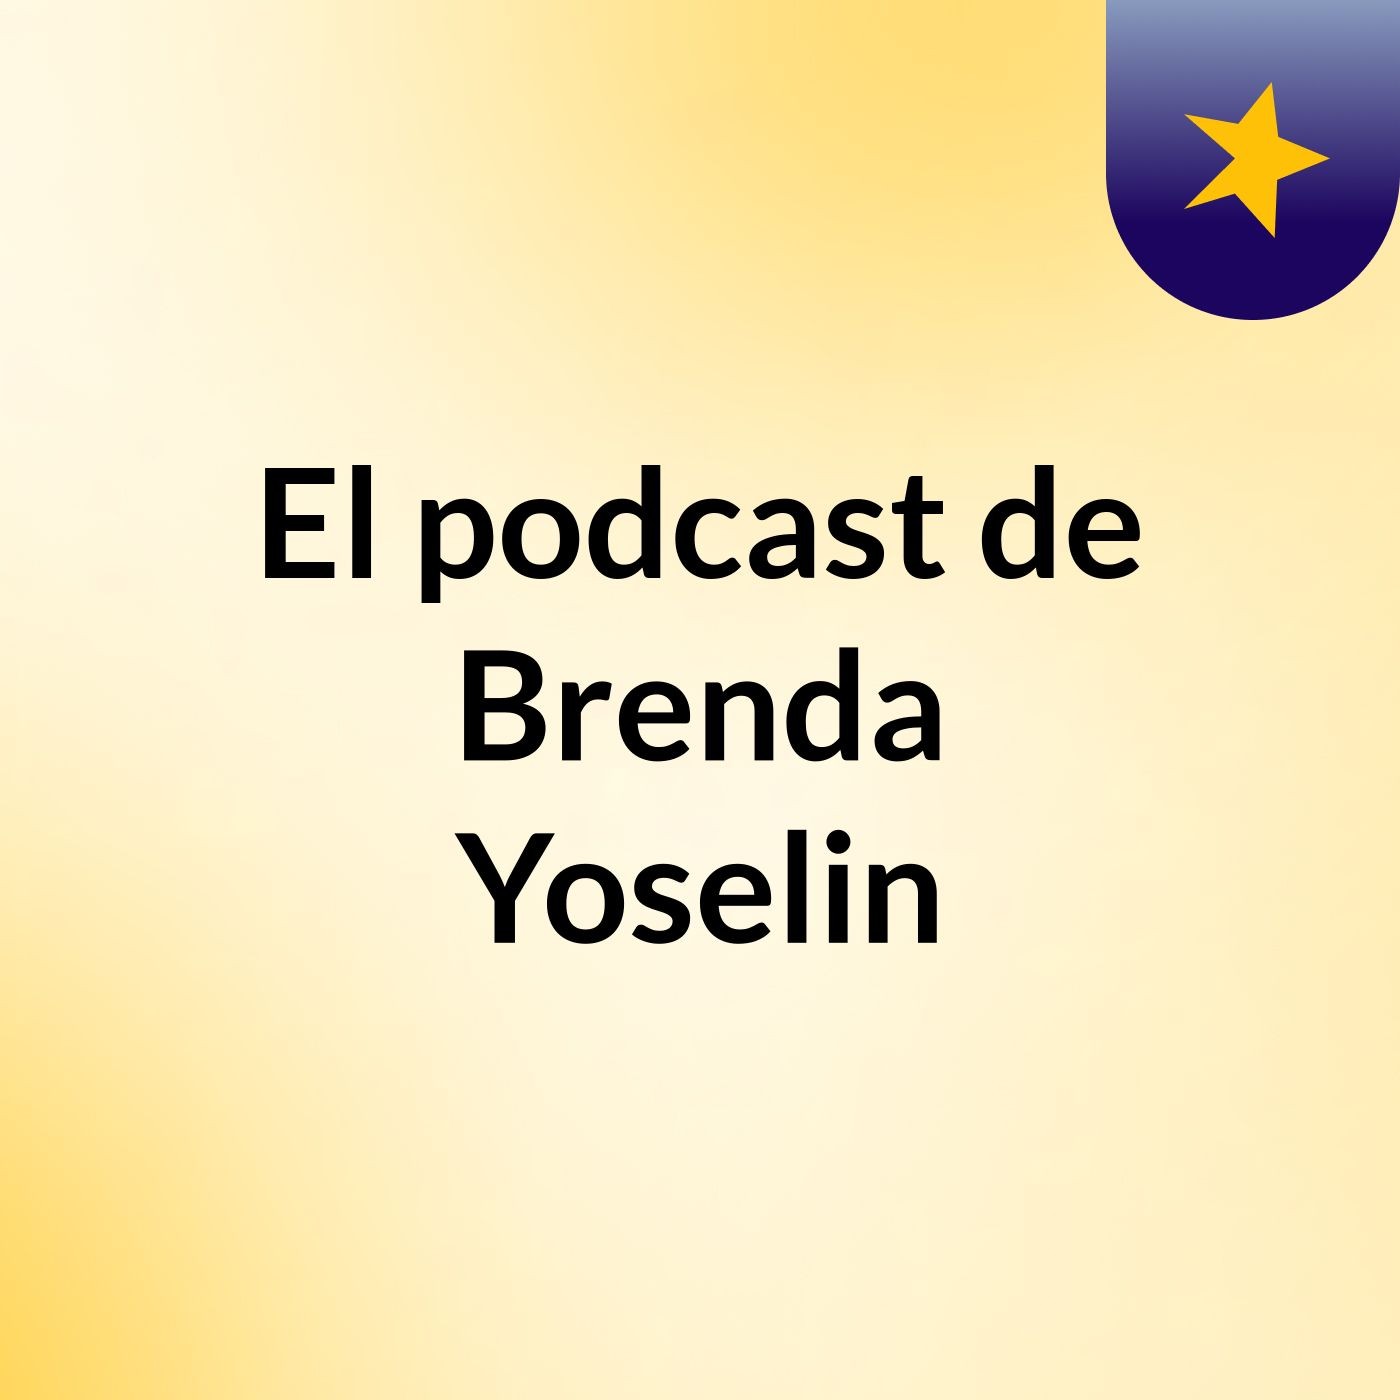 El podcast de Brenda Yoselin